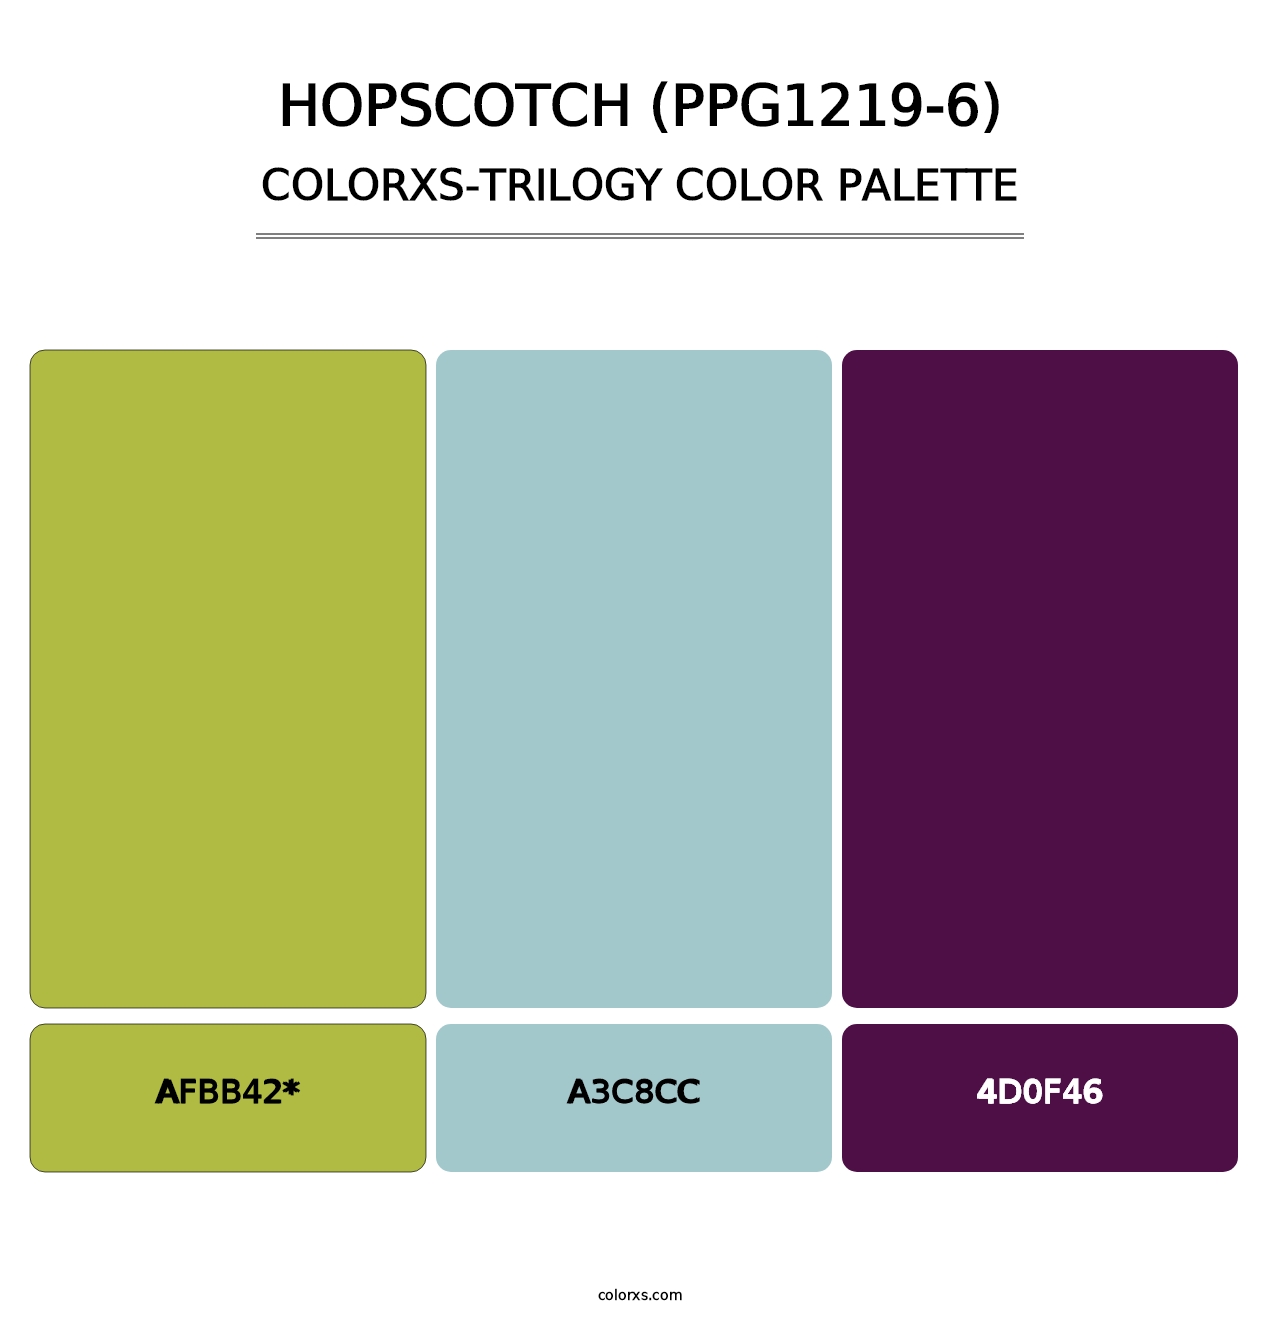 Hopscotch (PPG1219-6) - Colorxs Trilogy Palette